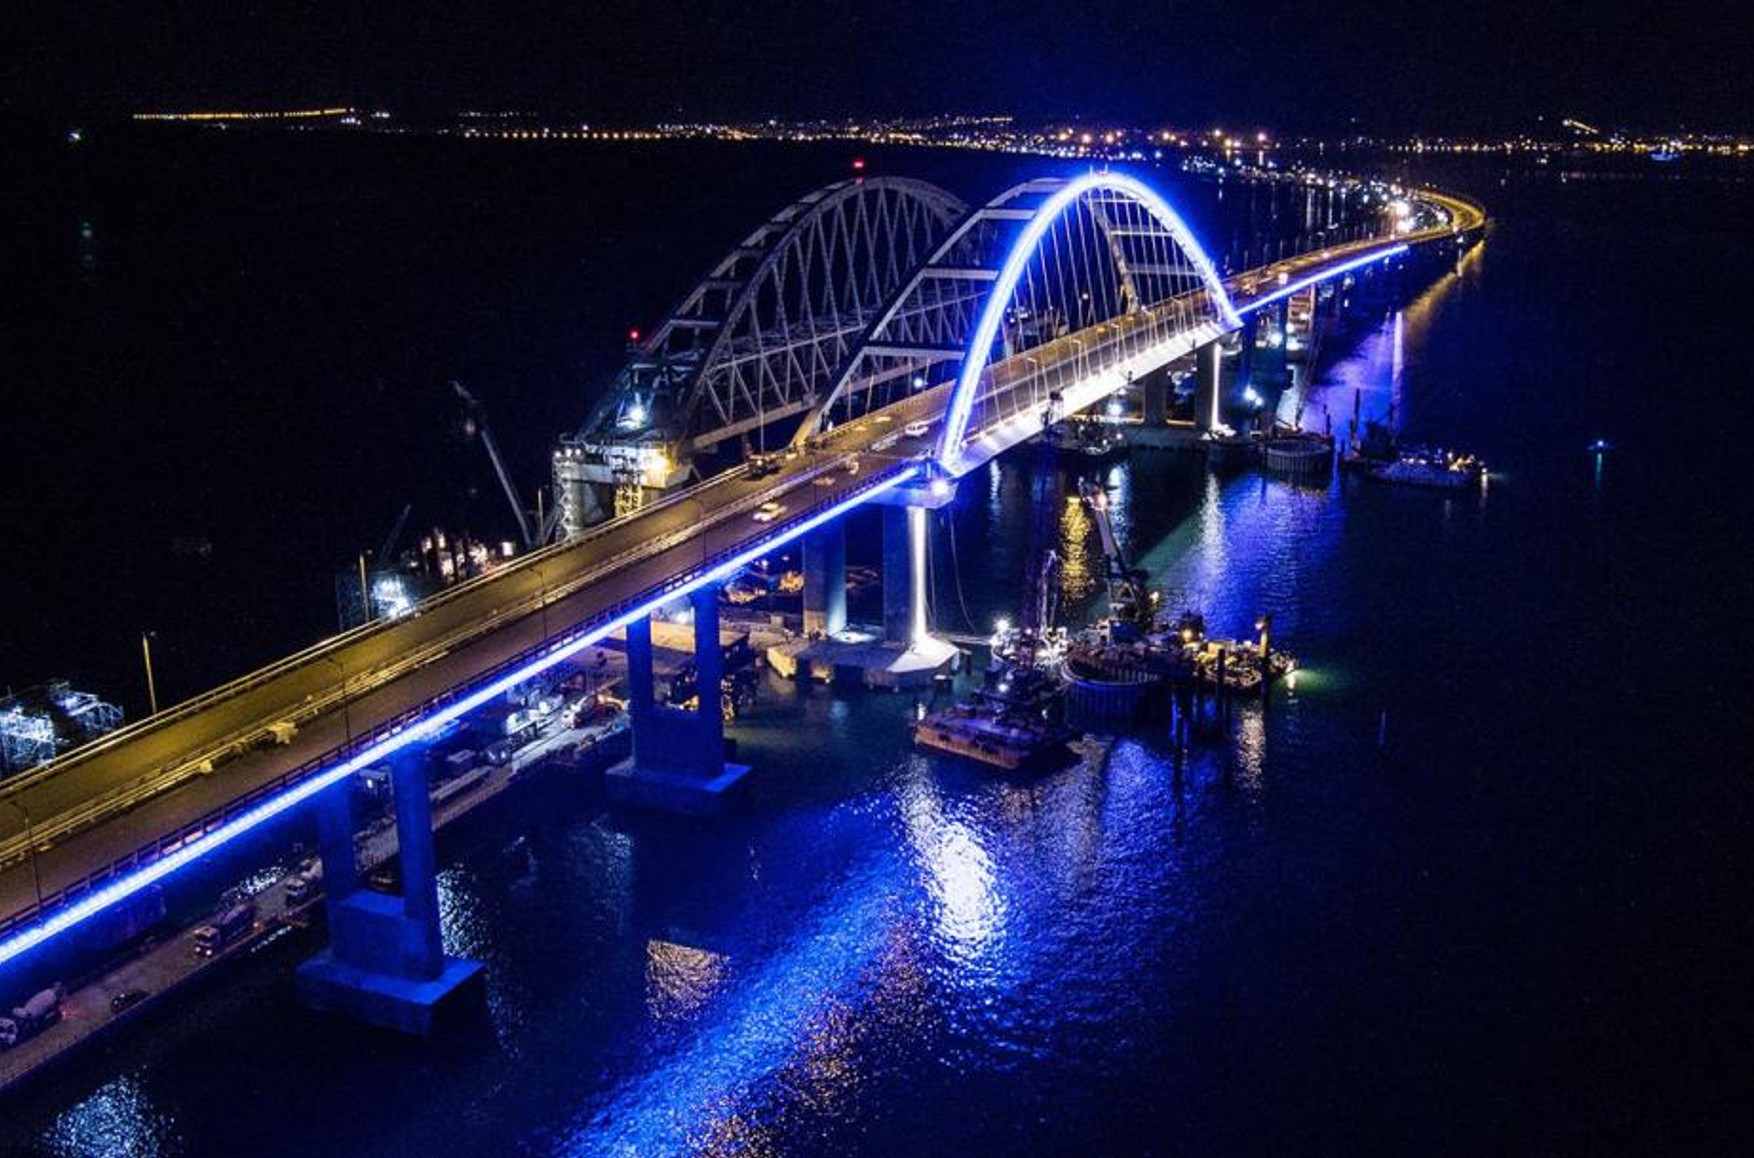 Возможный удар по Крымскому мосту 9 мая, отмена границ Польши с Украиной, горящий «Адмирал Макаров». Главное за день